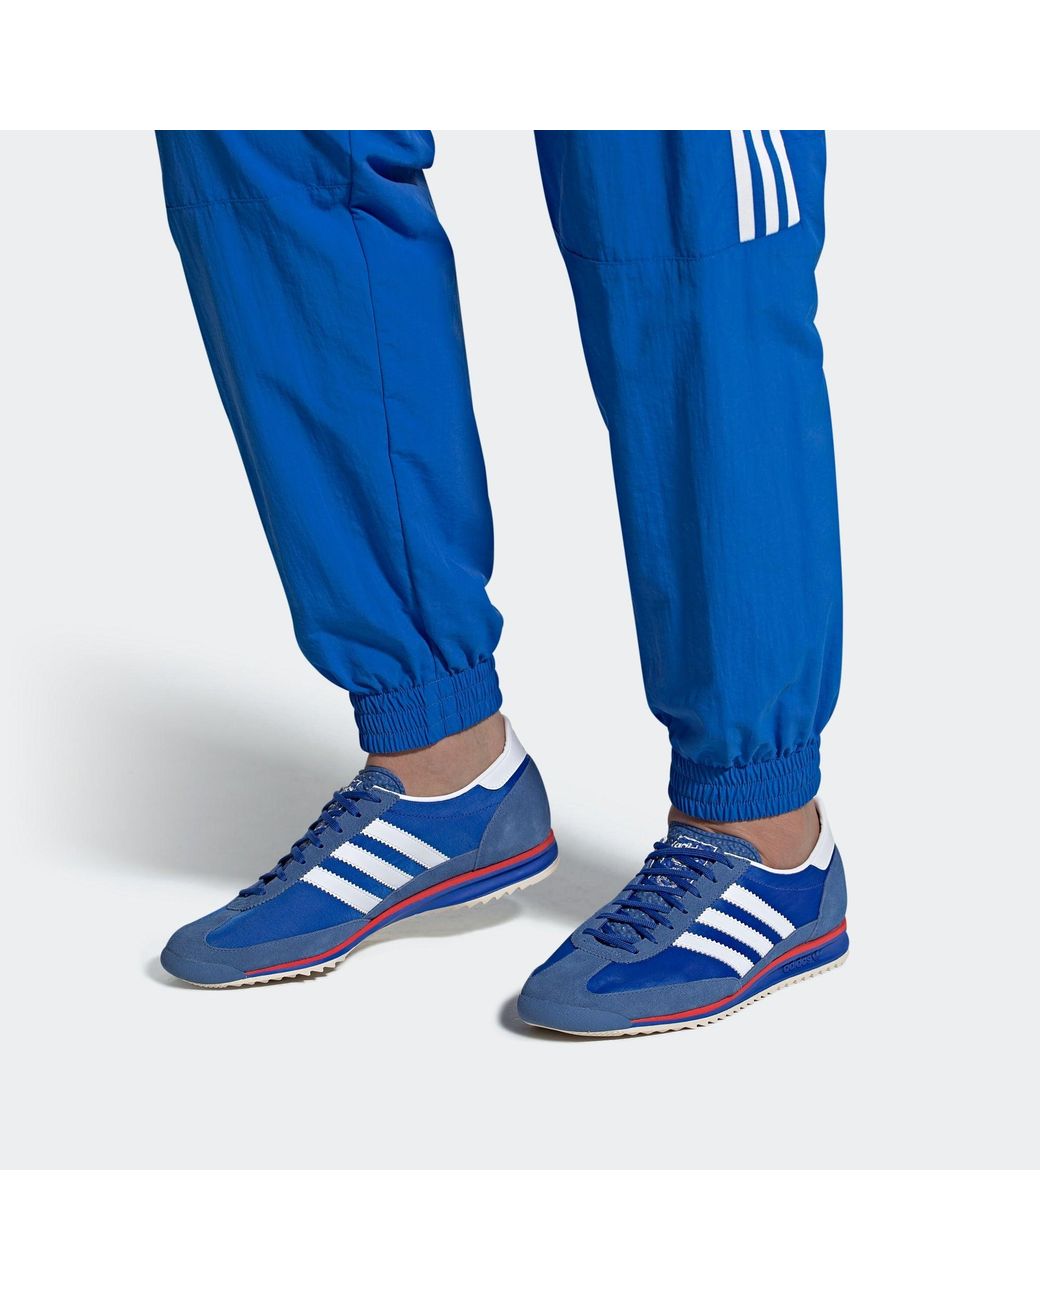 adidas Originals Unisex Sl 72 Shoes in Blue | Lyst UK